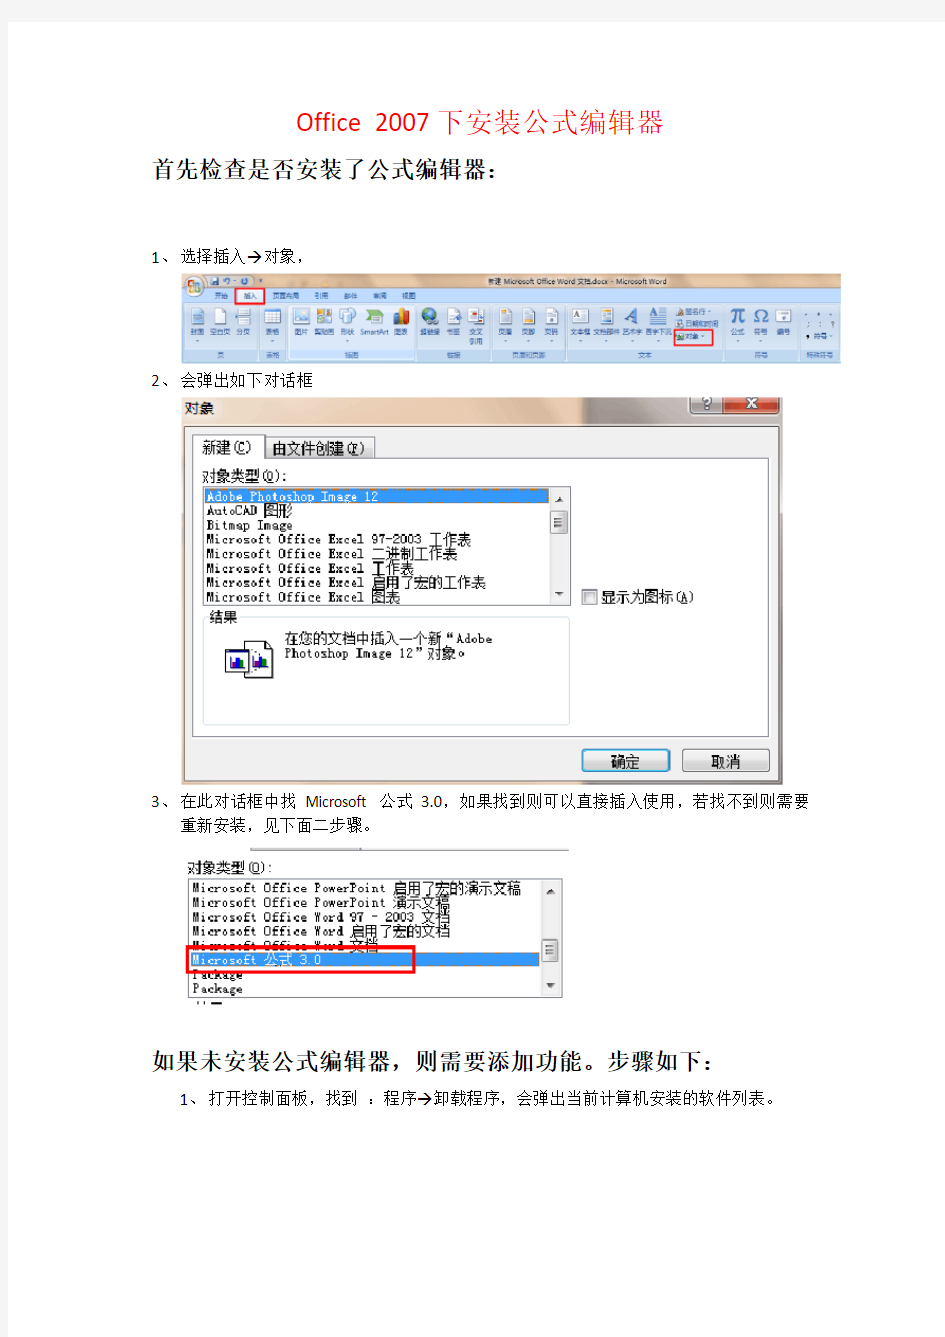 Office 2007下安装公式编辑器